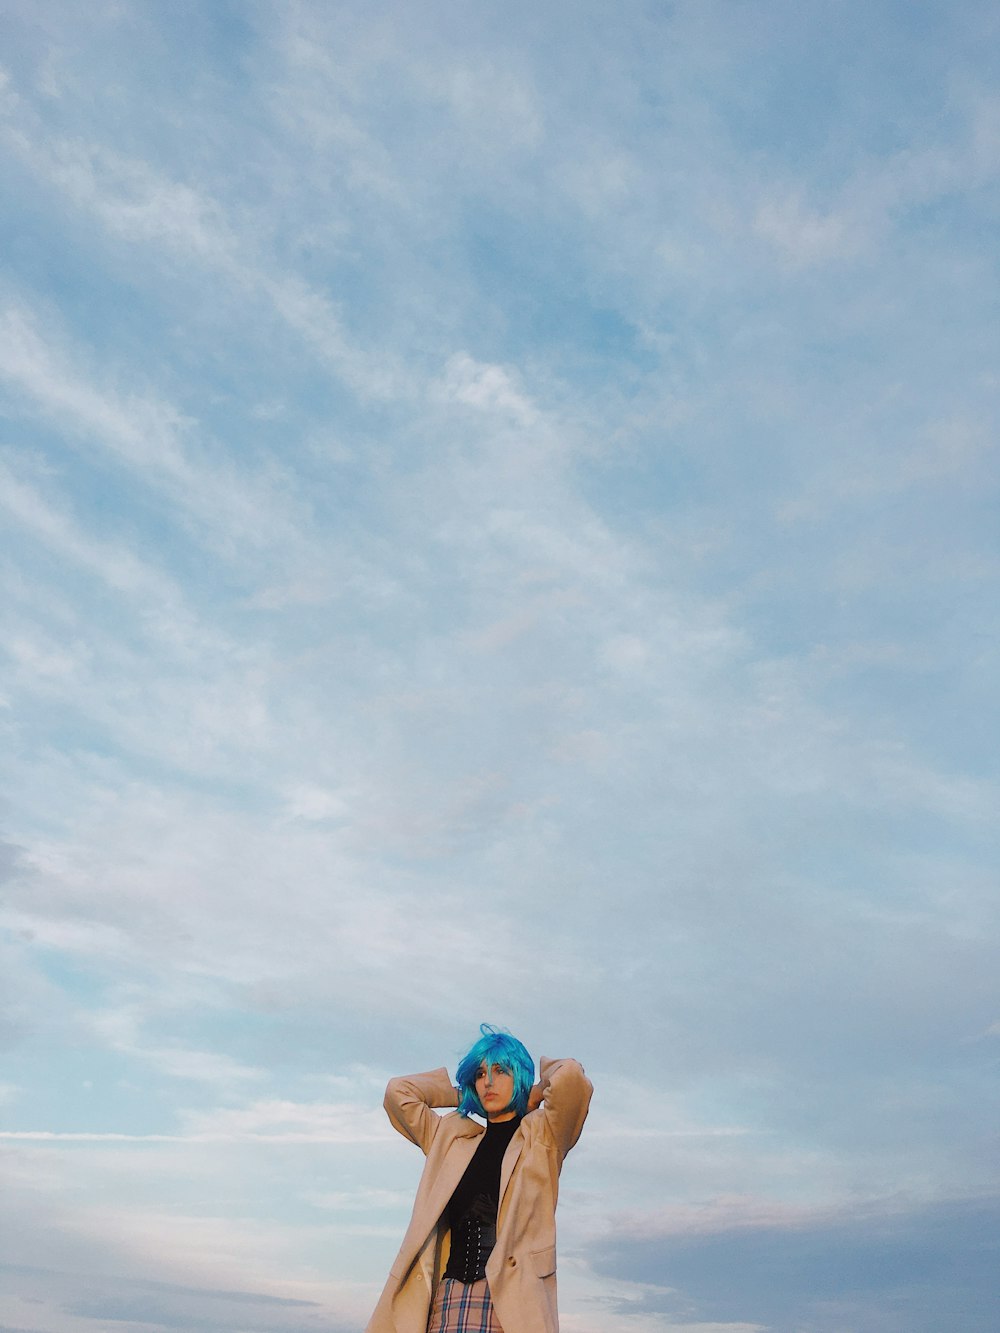 mulher na parte superior do biquíni azul e duques margaridas jeans azuis sentados na praia durante o dia